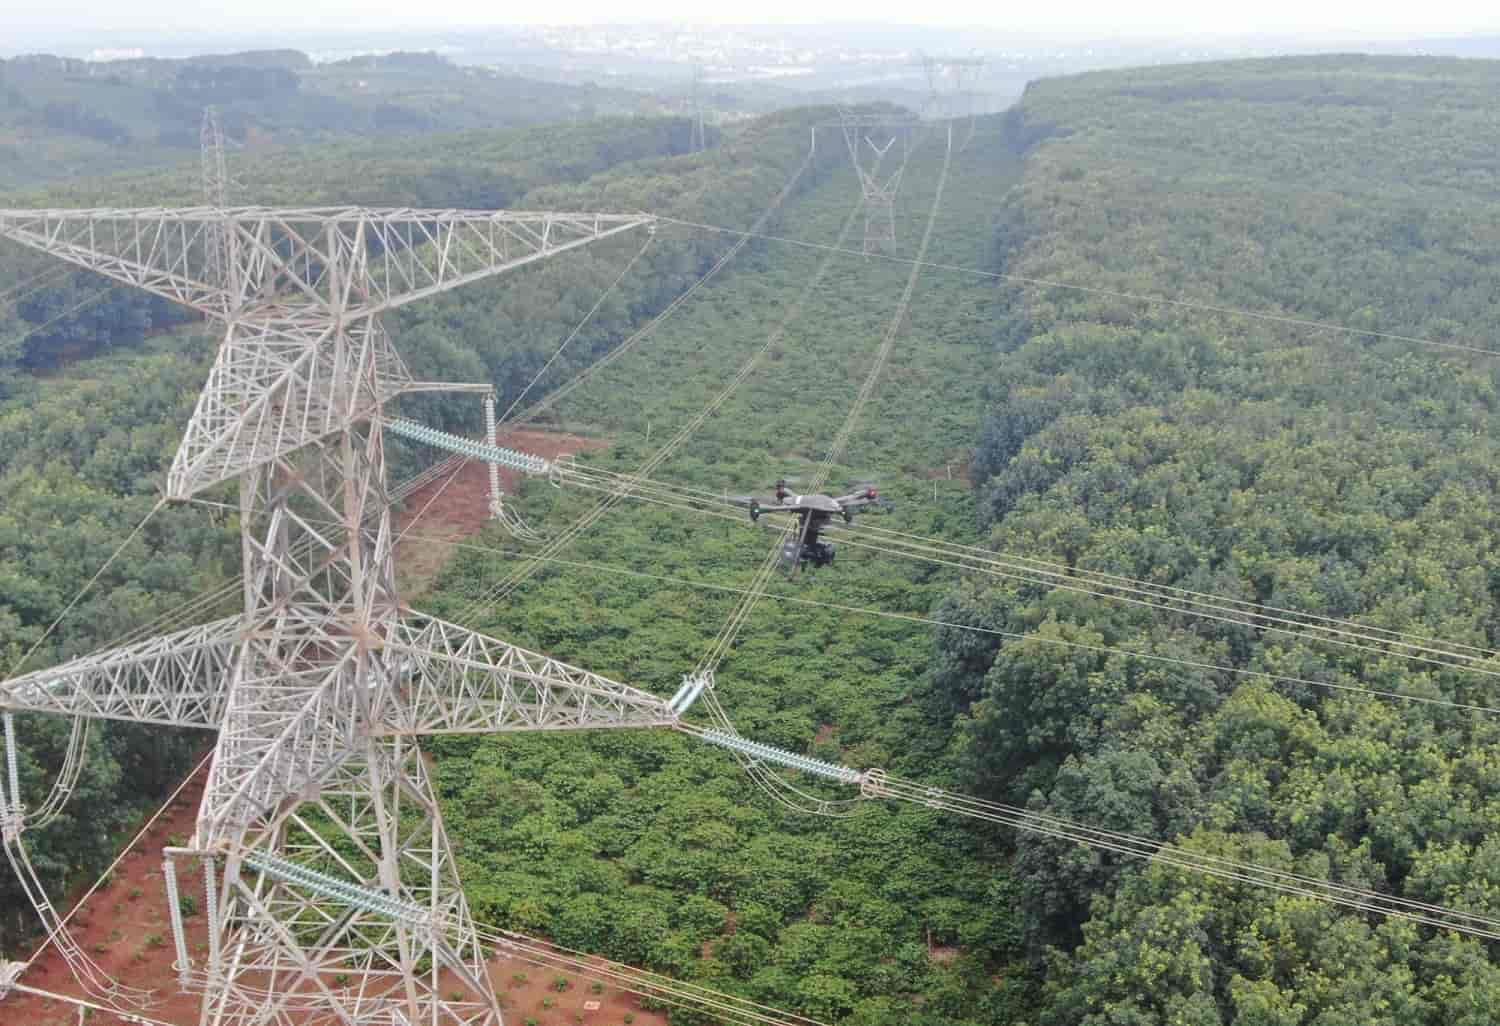 Kiến nghị Chính phủ cho phép tạm tác động vào rừng để thi công đường dây 500 kV mạch 3